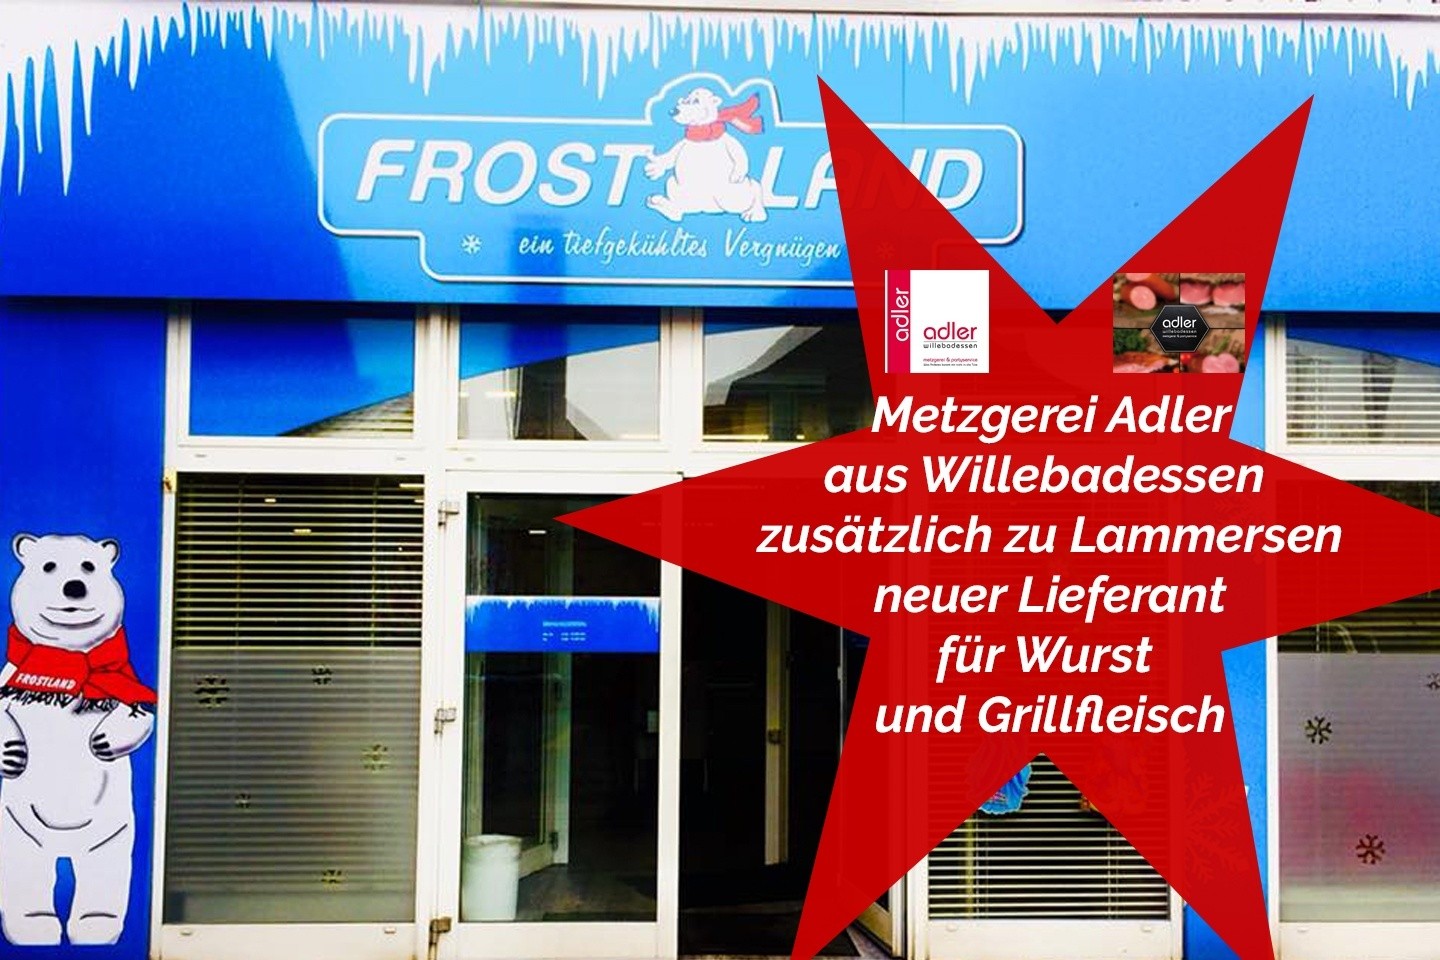 Frostland Bad Driburg: Die regionale Metzgerei Adler aus Willebadessen ist neuer Lieferant für Wurst und Grillfleisch